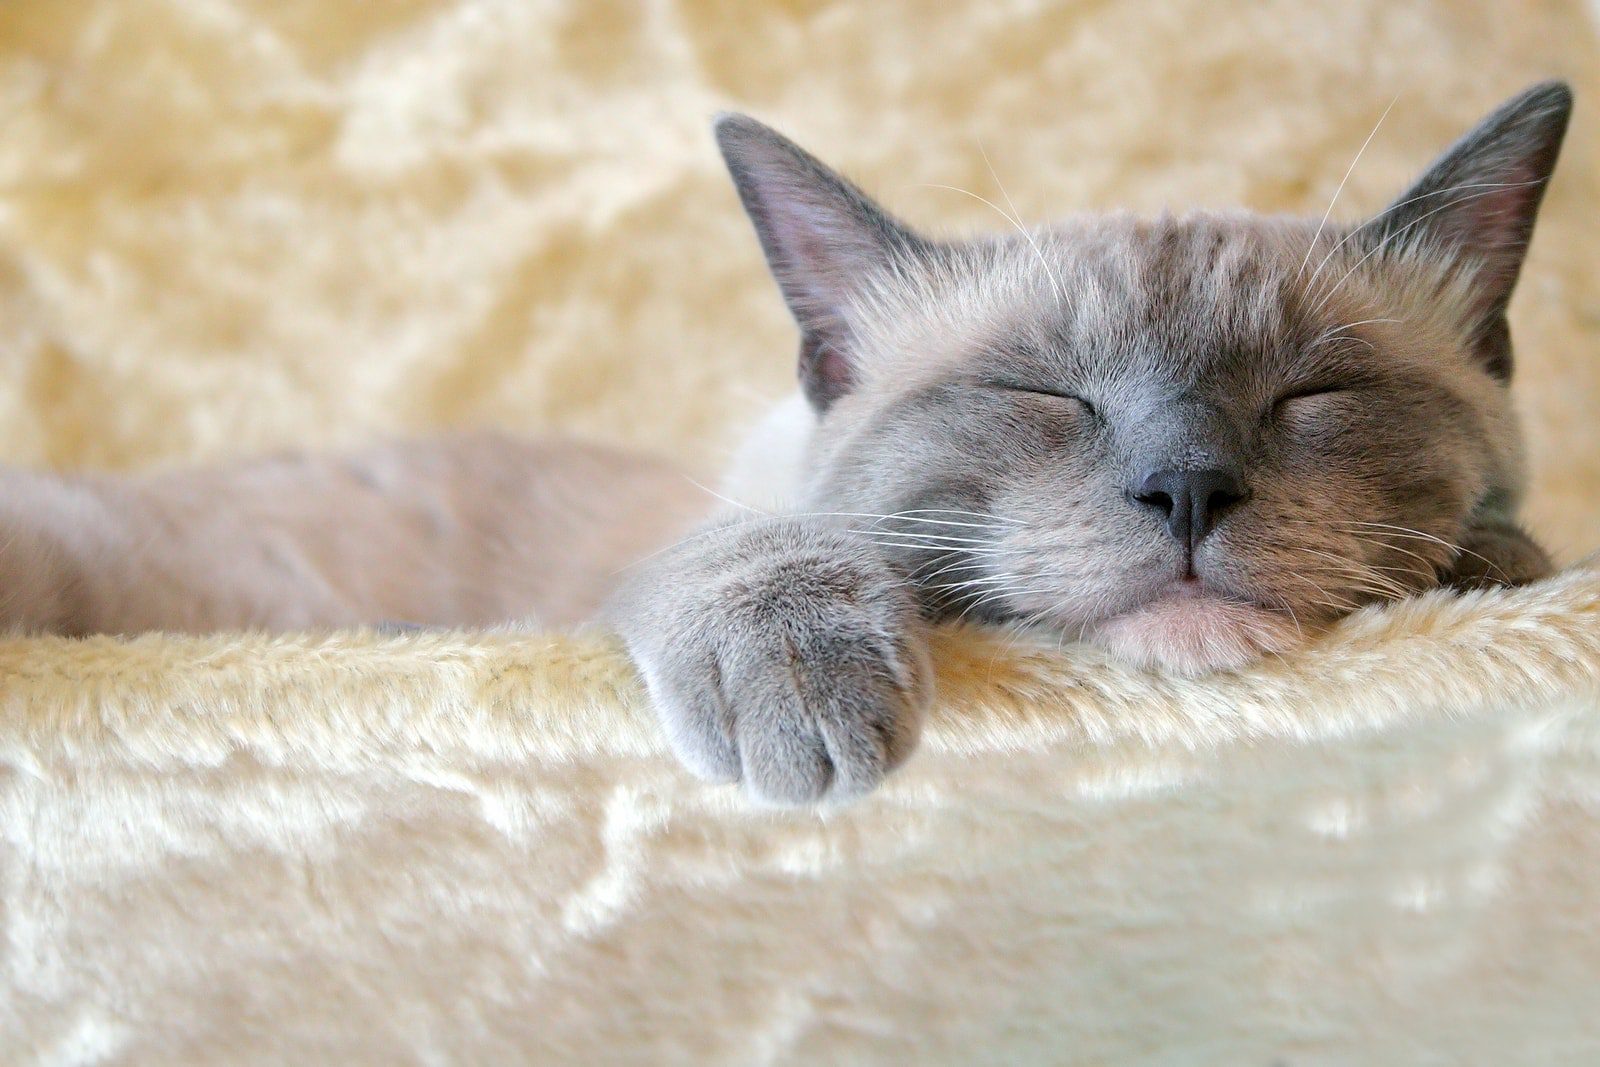 Cat sleep: why do cats sleep a lot